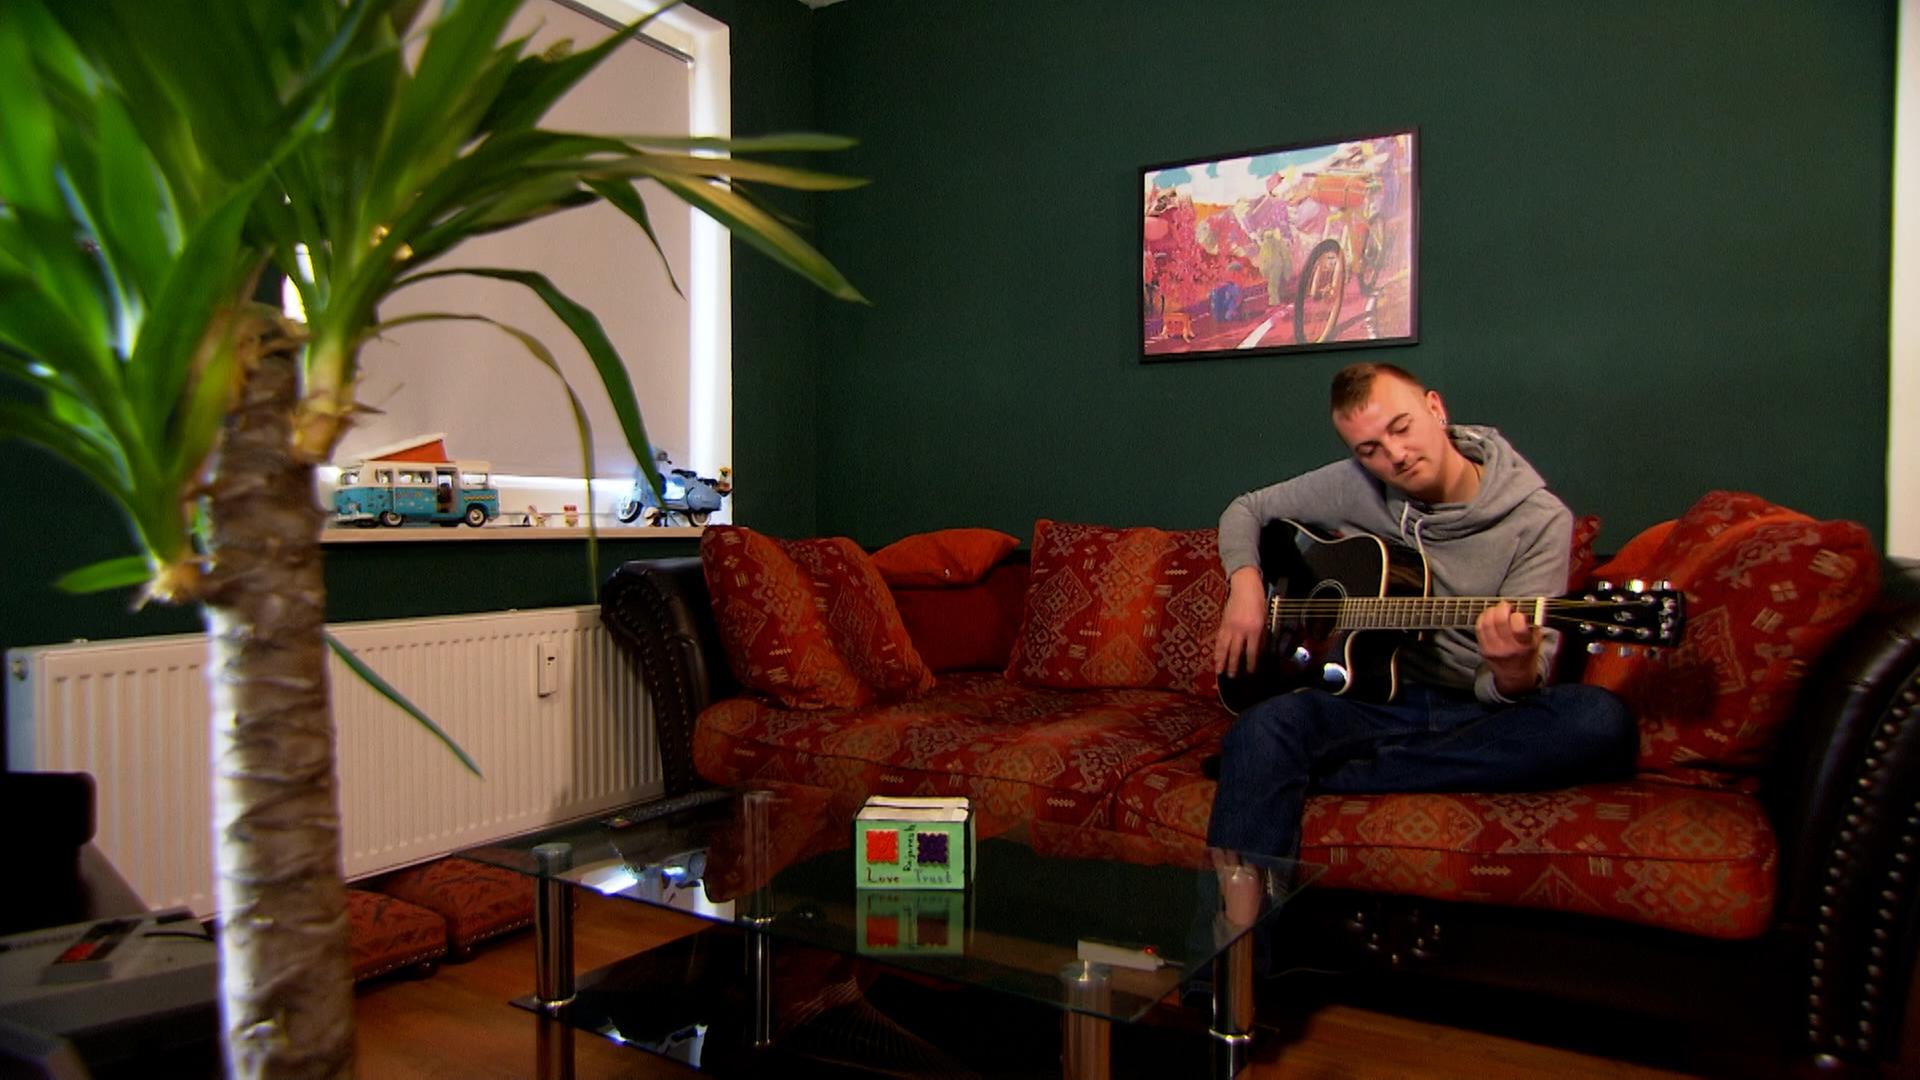 Ein junger Mann sitzt auf einem roten Sofa und spielt Gitarre.